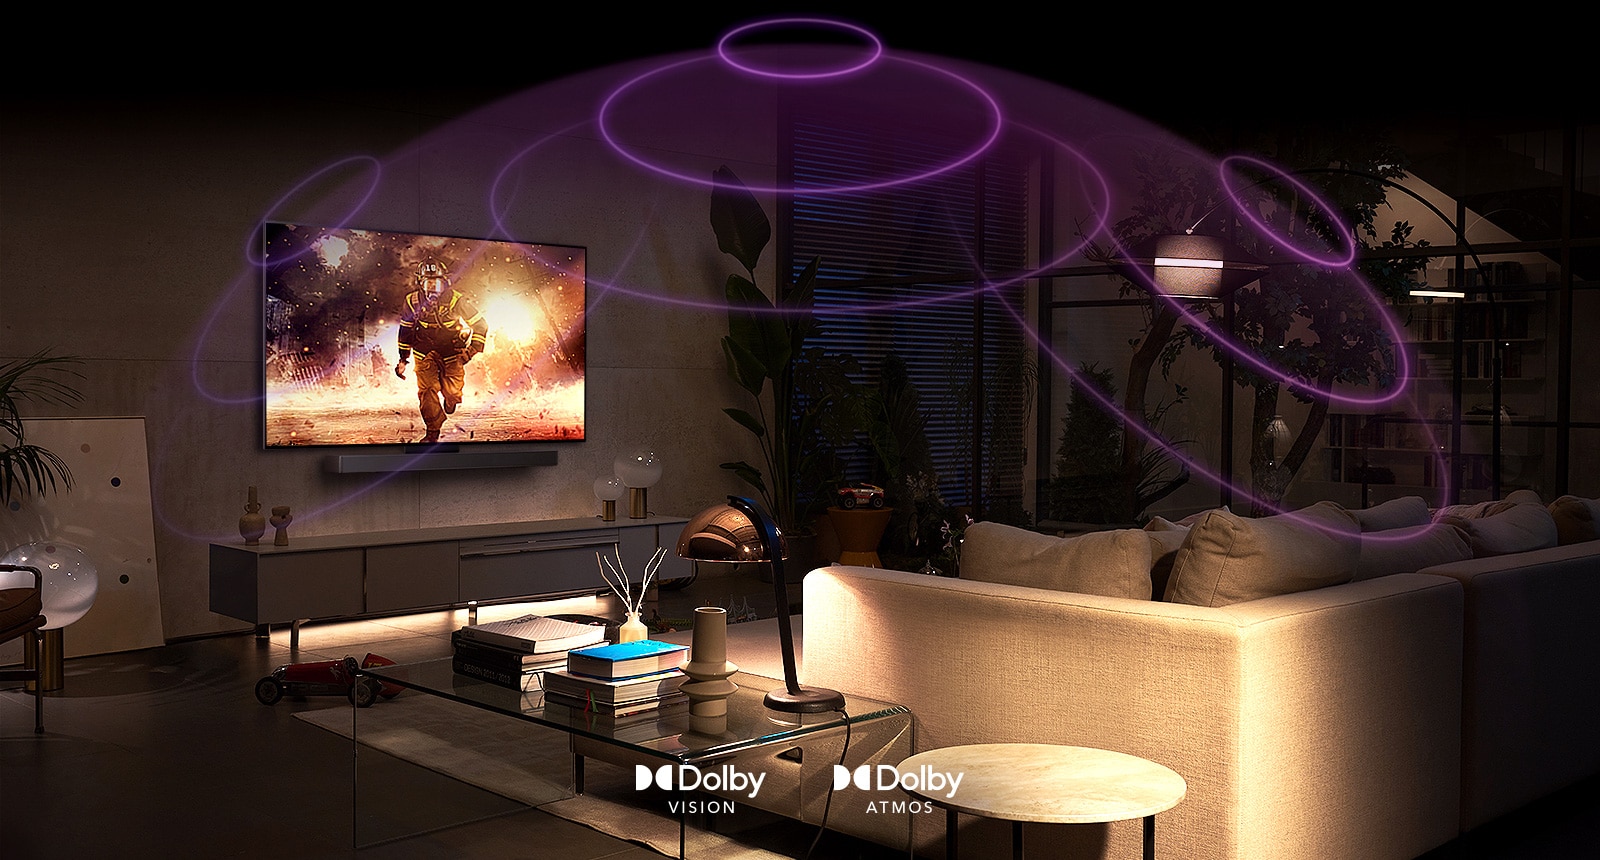 Slika televizorja LG OLED v sobi med predvajanjem akcijskega filma. Zvočni valovi ustvarijo kupolo med kavčem in televizorjem, kar zagotavlja poglobljen prostorski zvok.